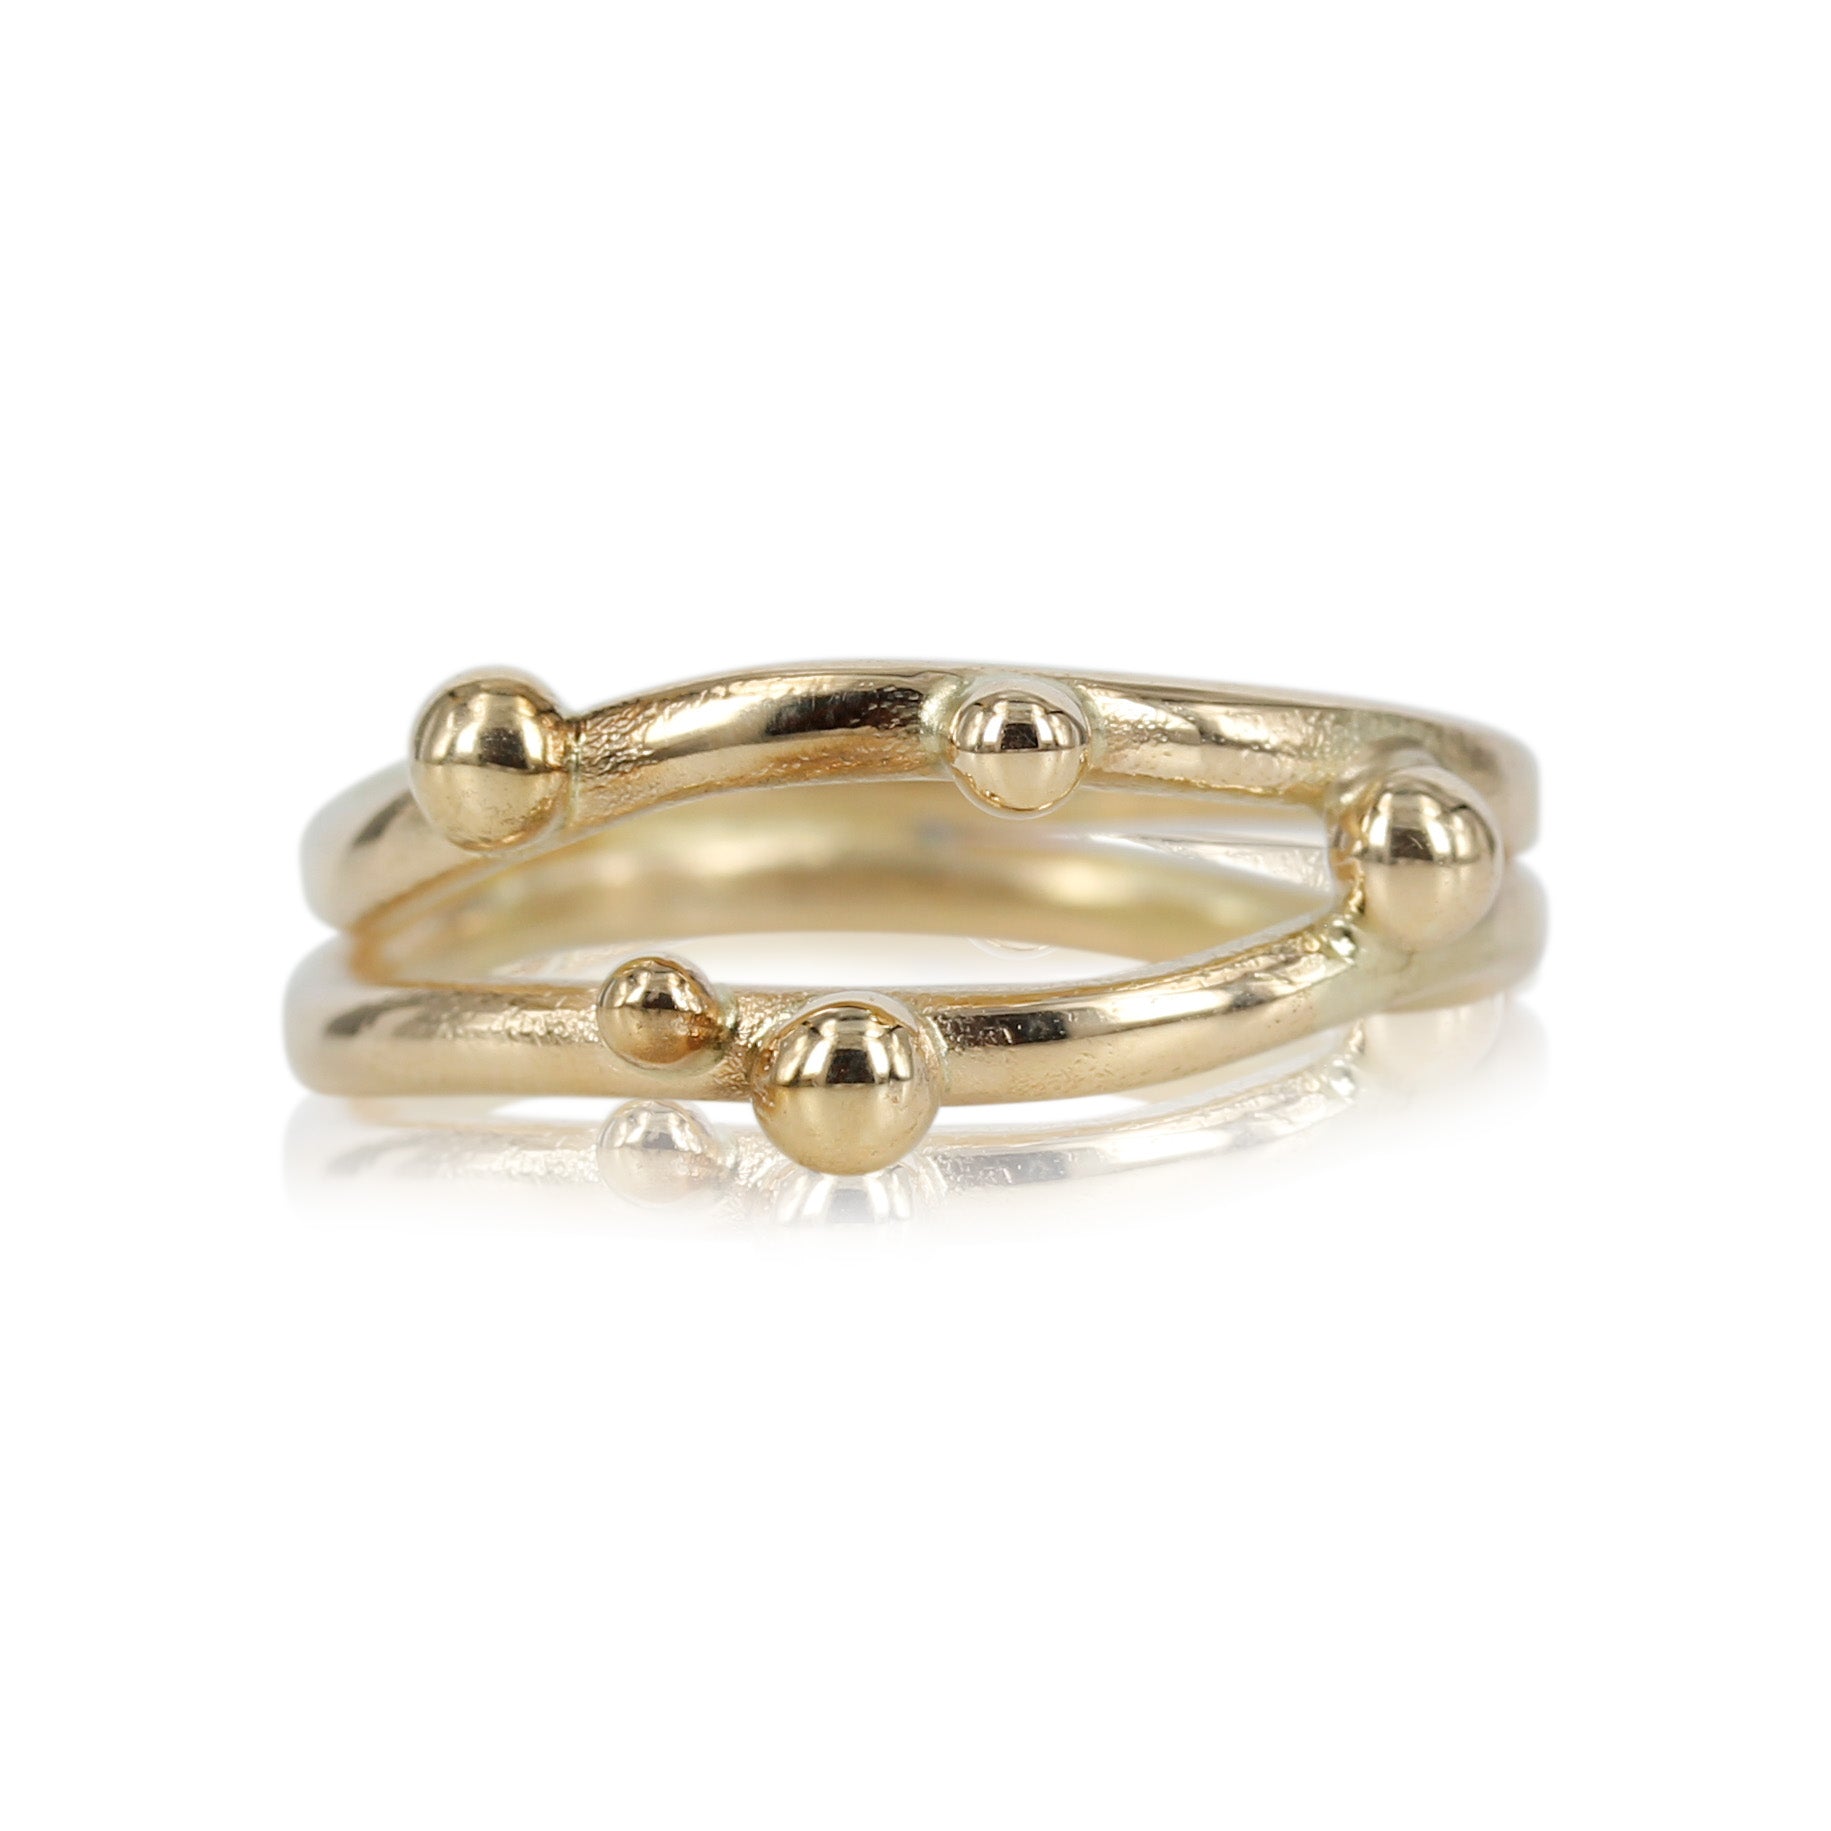 14kt guldring med skønne guldkugler der danser på den fine ringskinne.  Ringen bliver håndlavet, derfor er der altid variationer fra billedet.  Ønskes det kan der isættes brillanter i guldkuglerne.